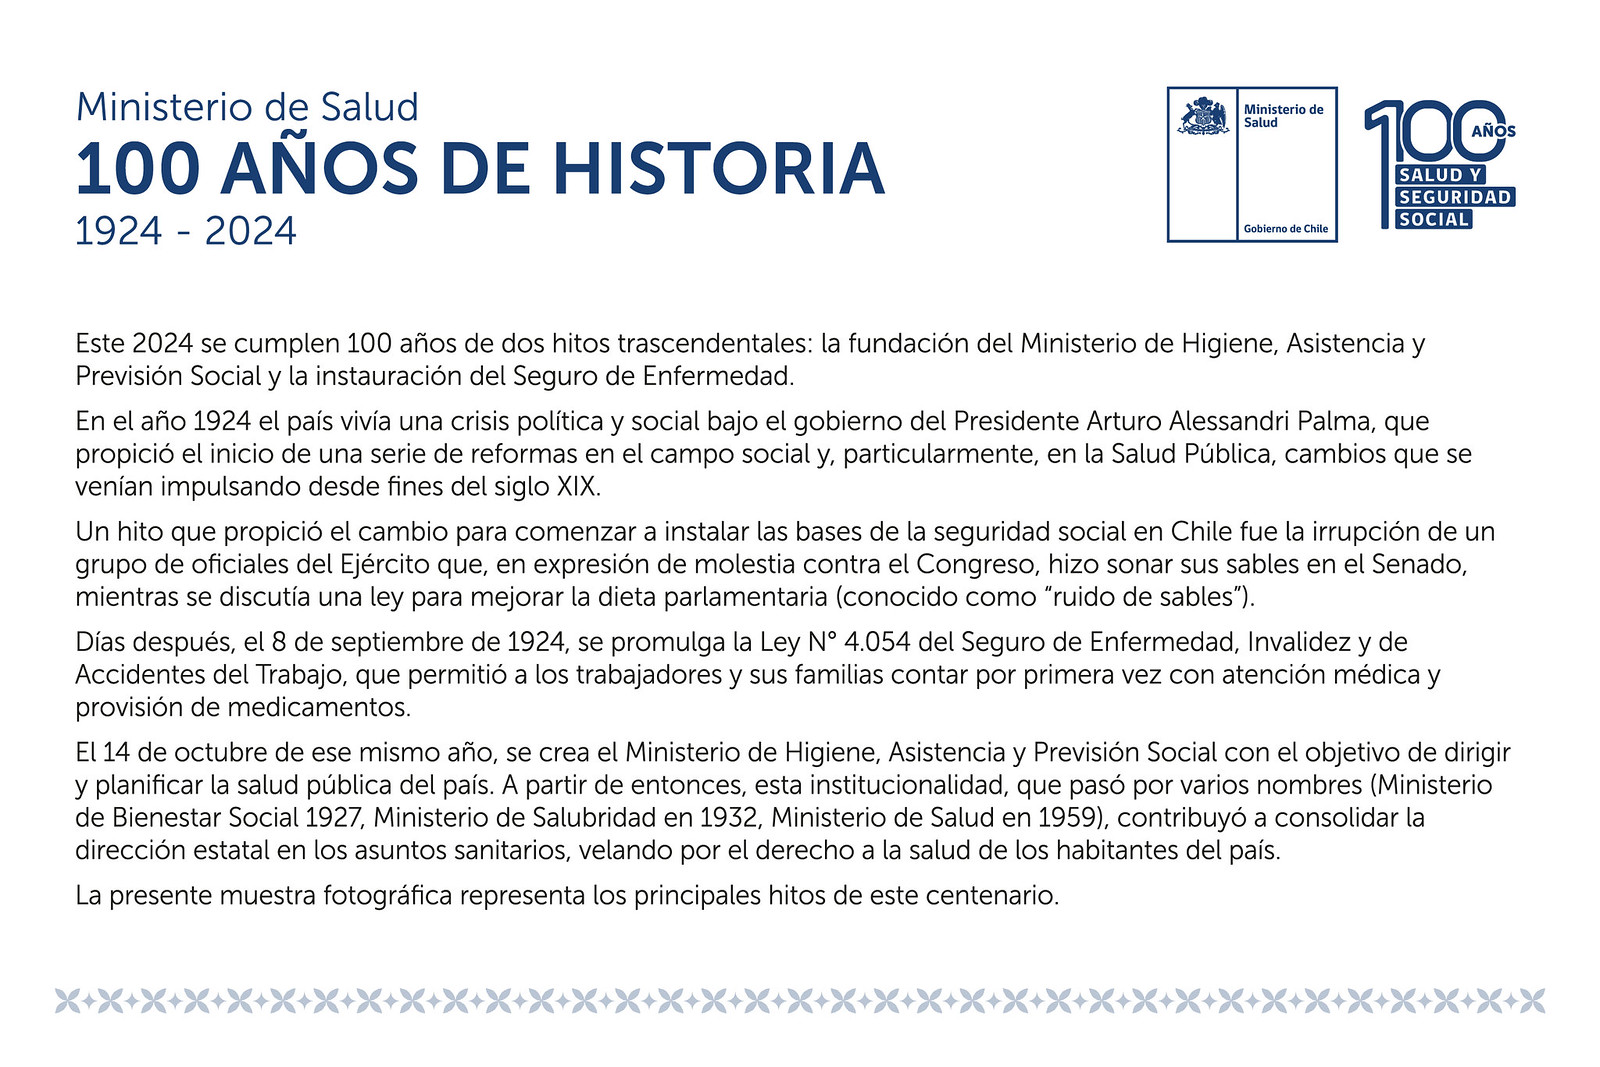 Ministerio de Salud: 100 años de historia 1924-2024